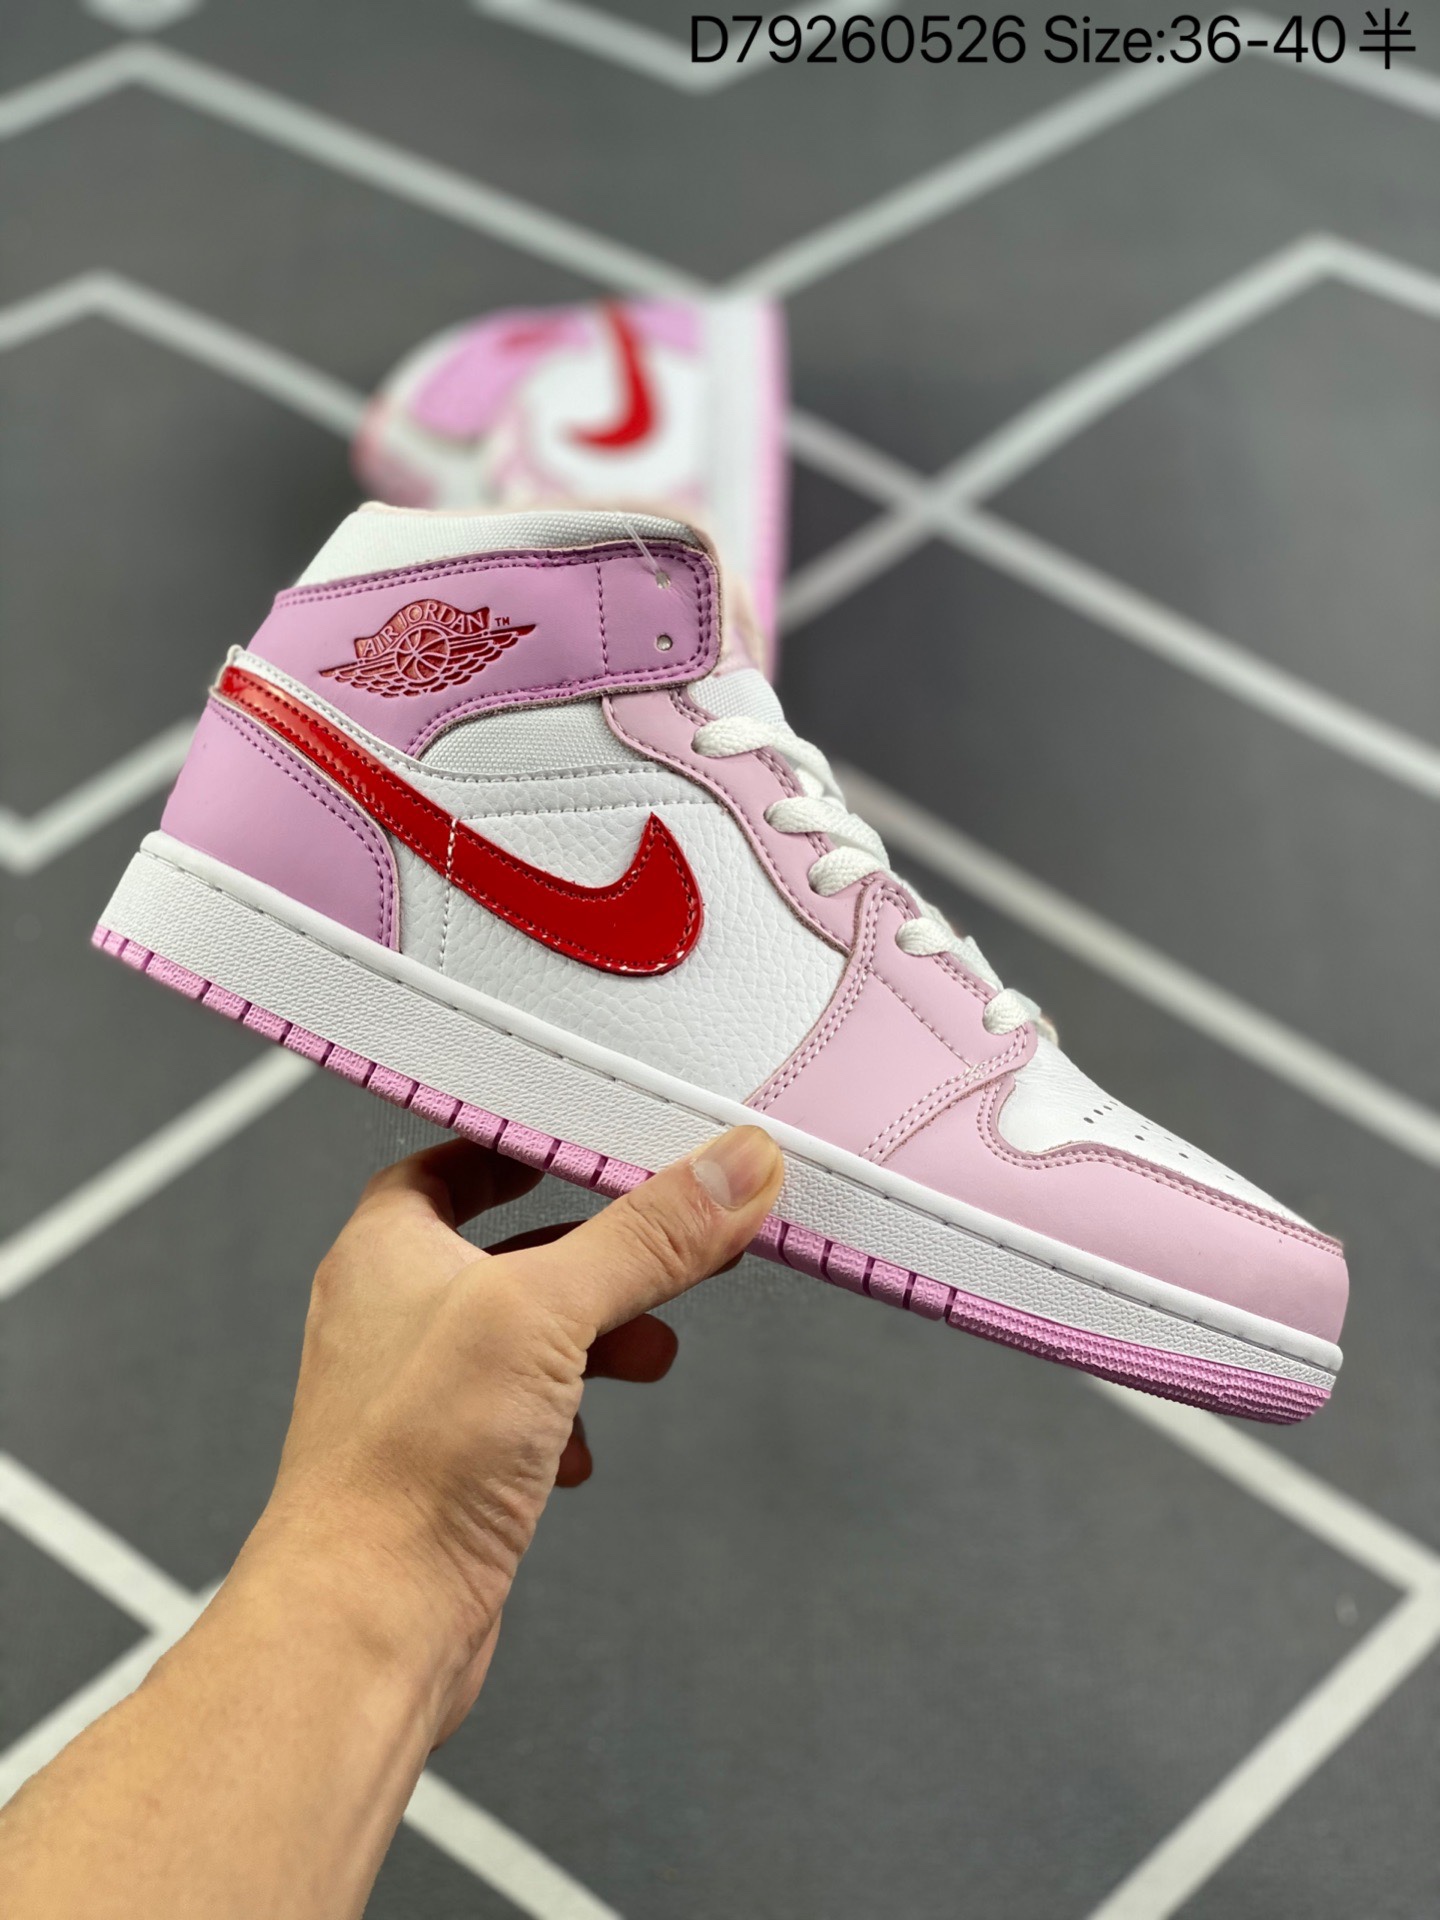 スニーカー   Nike Wmns Air Jordan 1 Mid"Valentine’s Day"AJ1  ファッションシューズ   何でも似合う